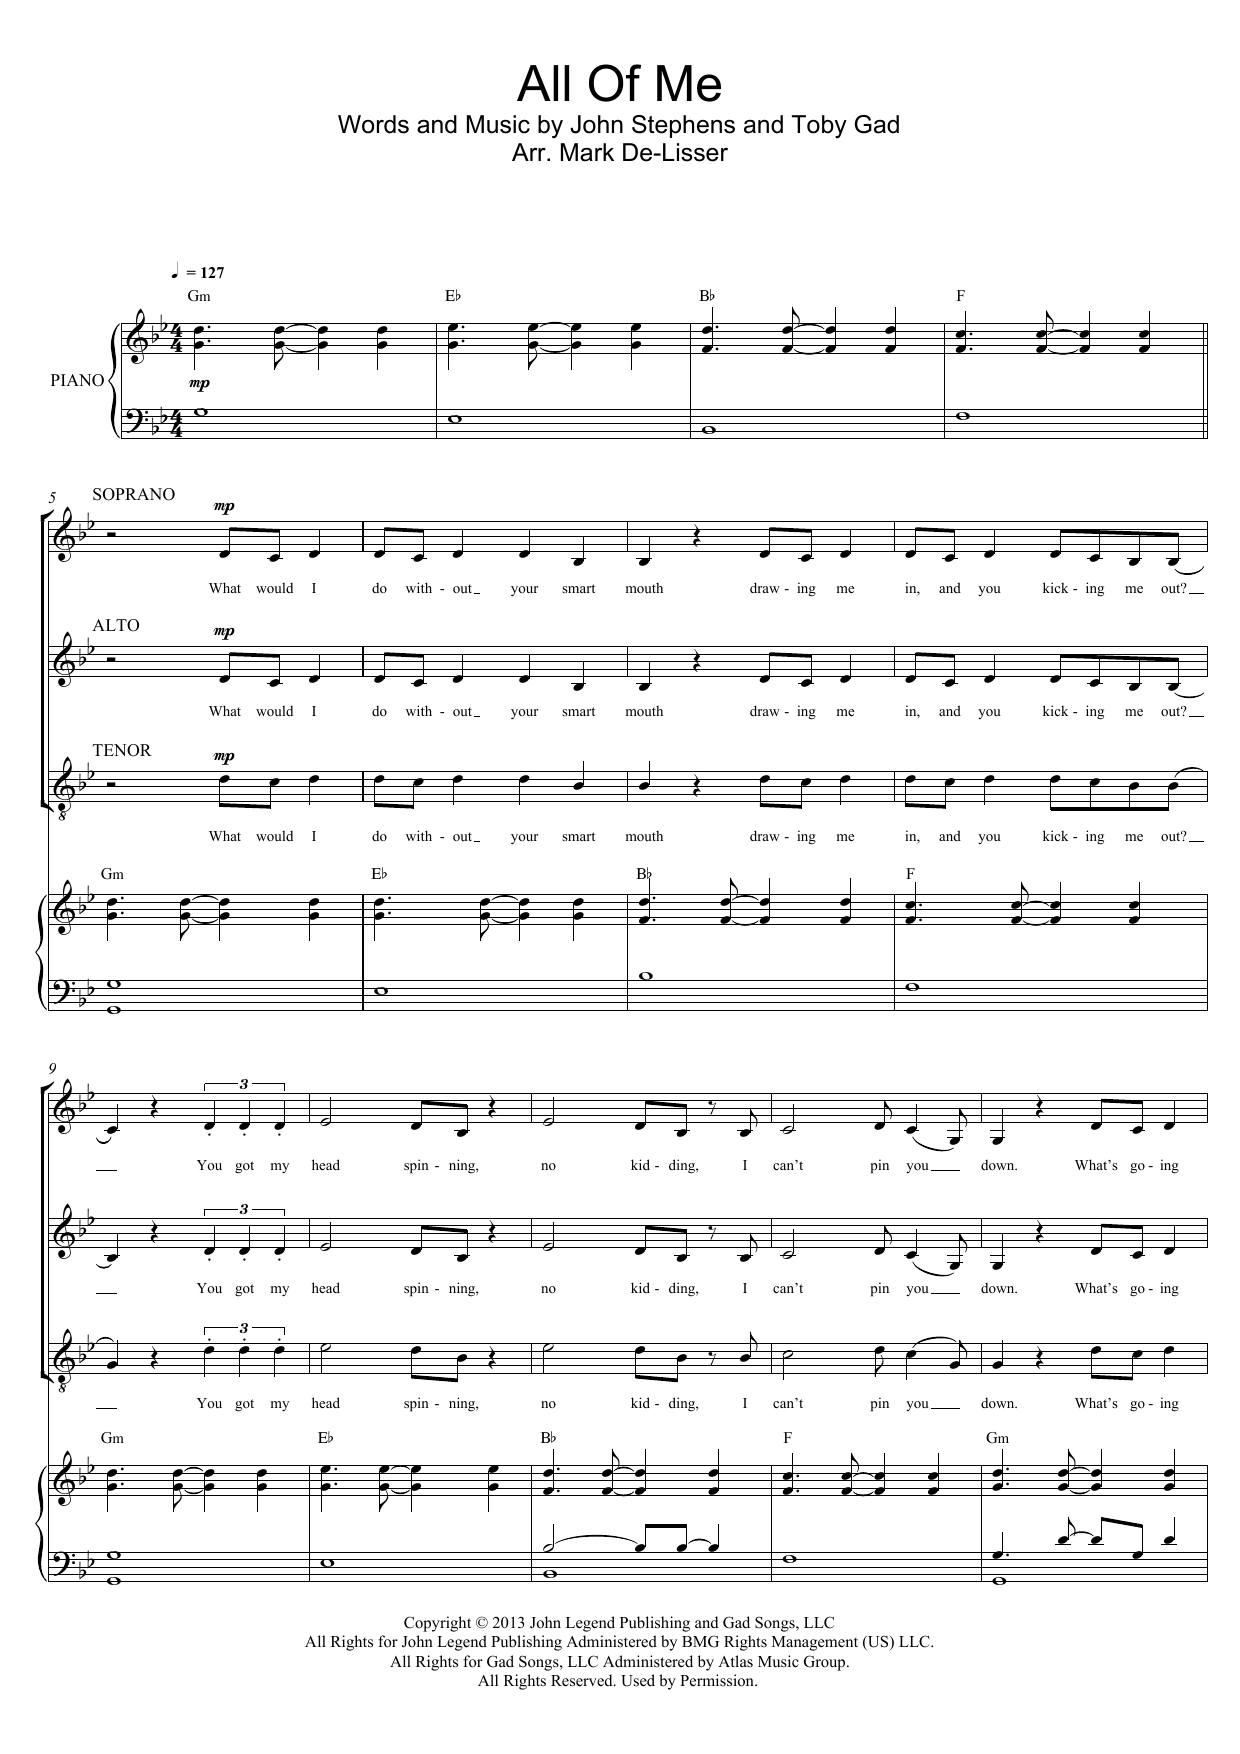 John Legend All Of Me (arr. Mark De-Lisser) Sheet Music Notes & Chords for SAT - Download or Print PDF